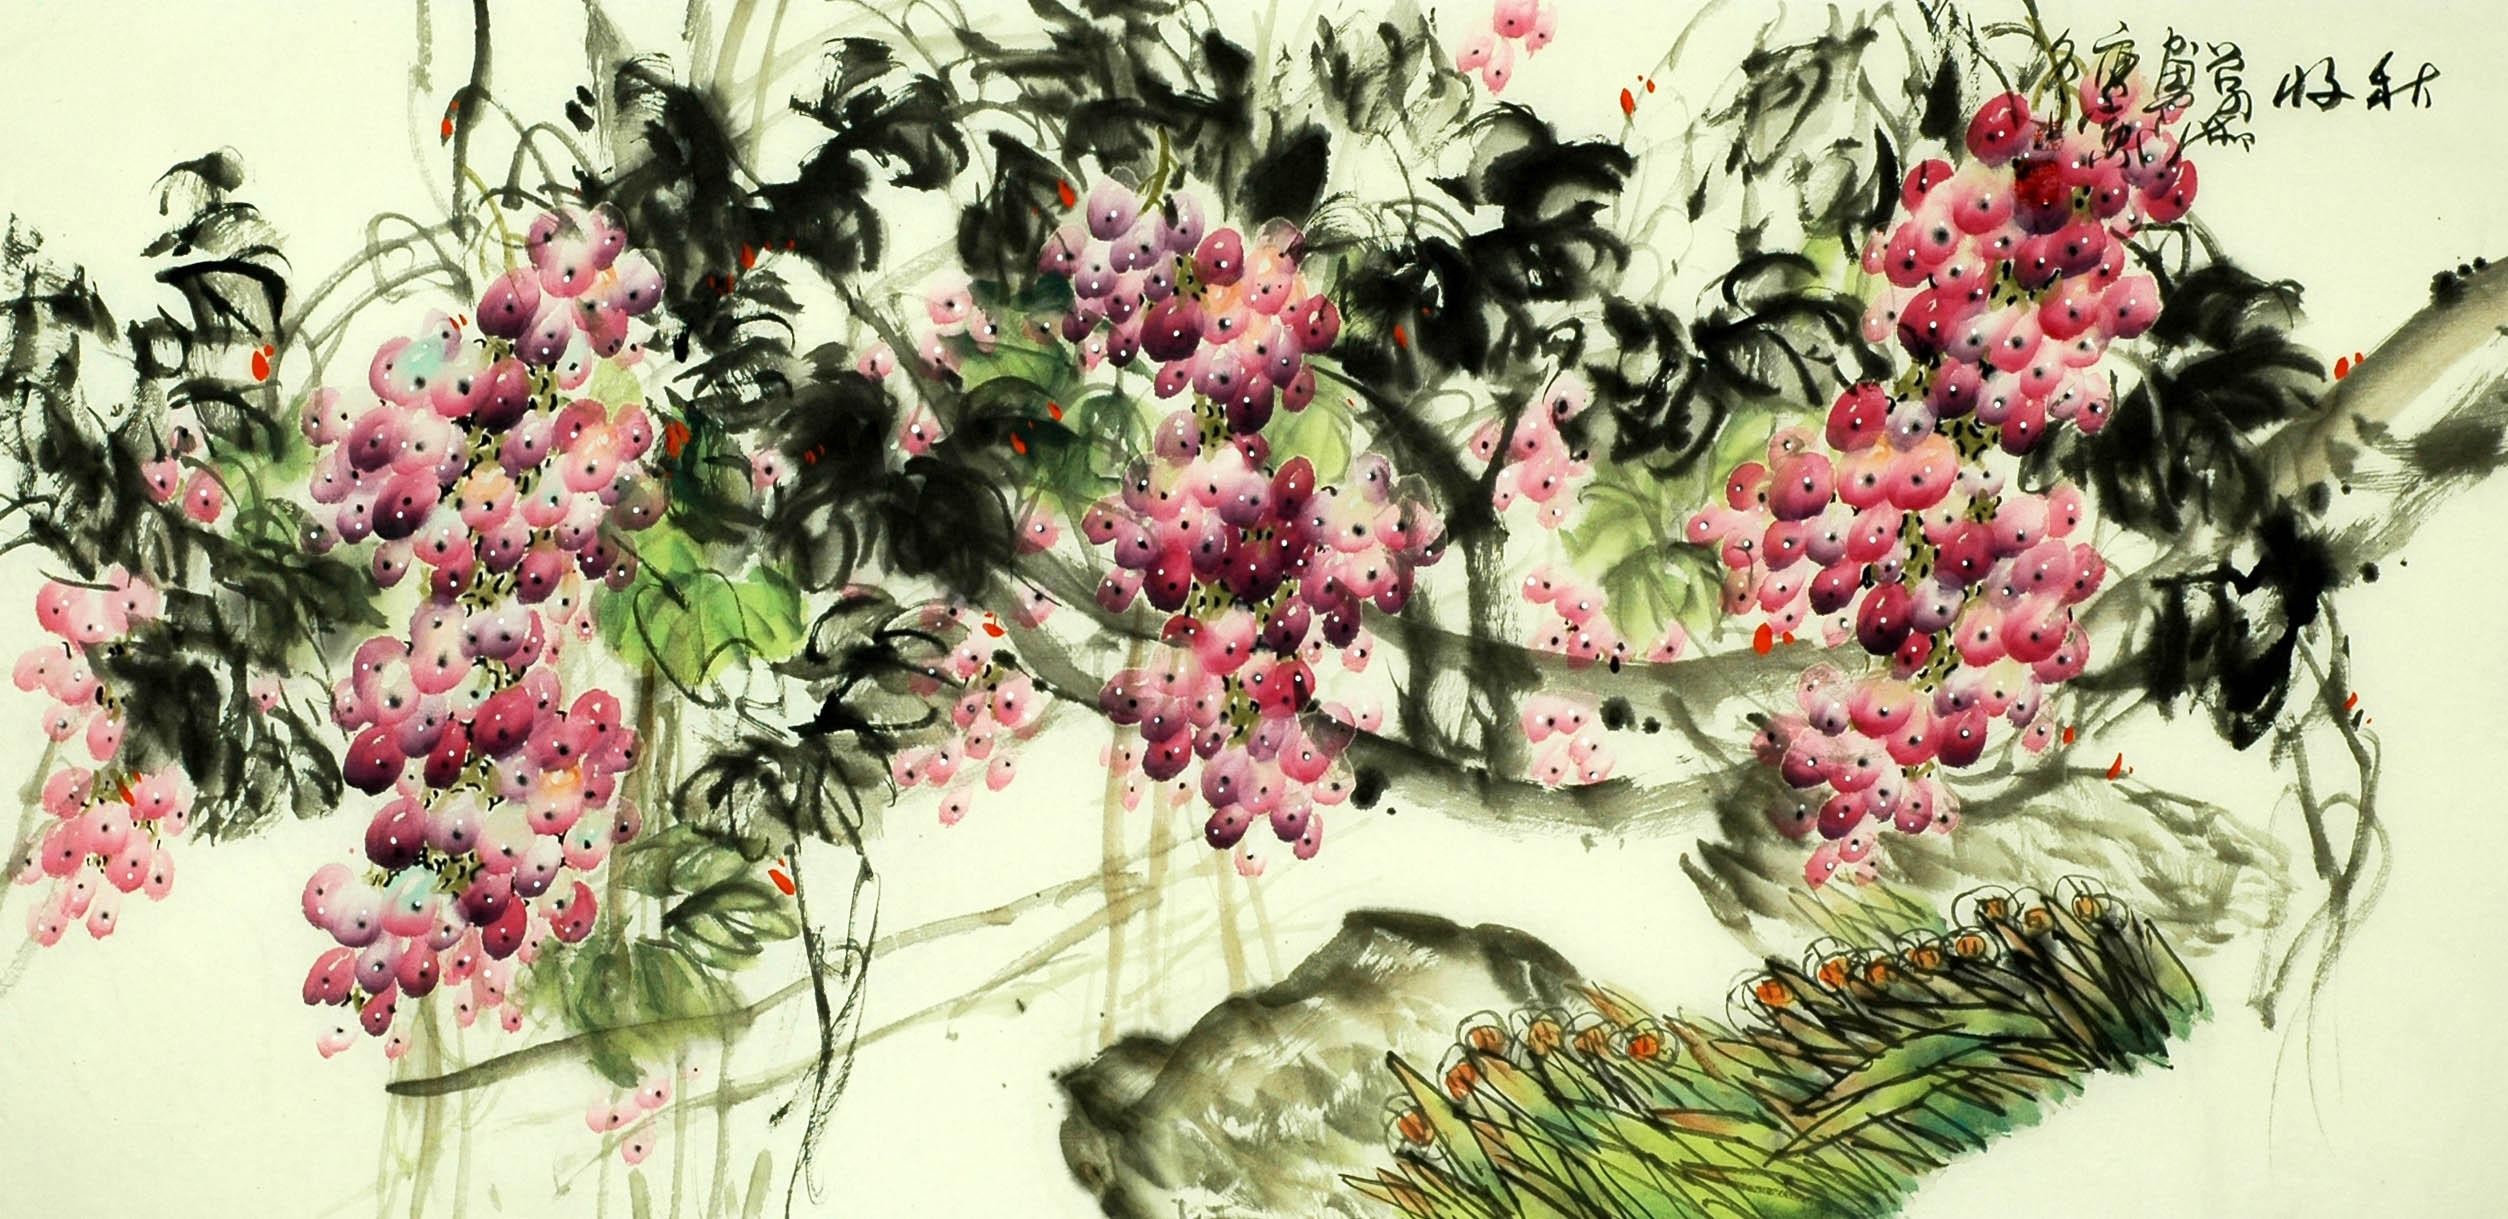 Chinese Grapes Painting - CNAG008262